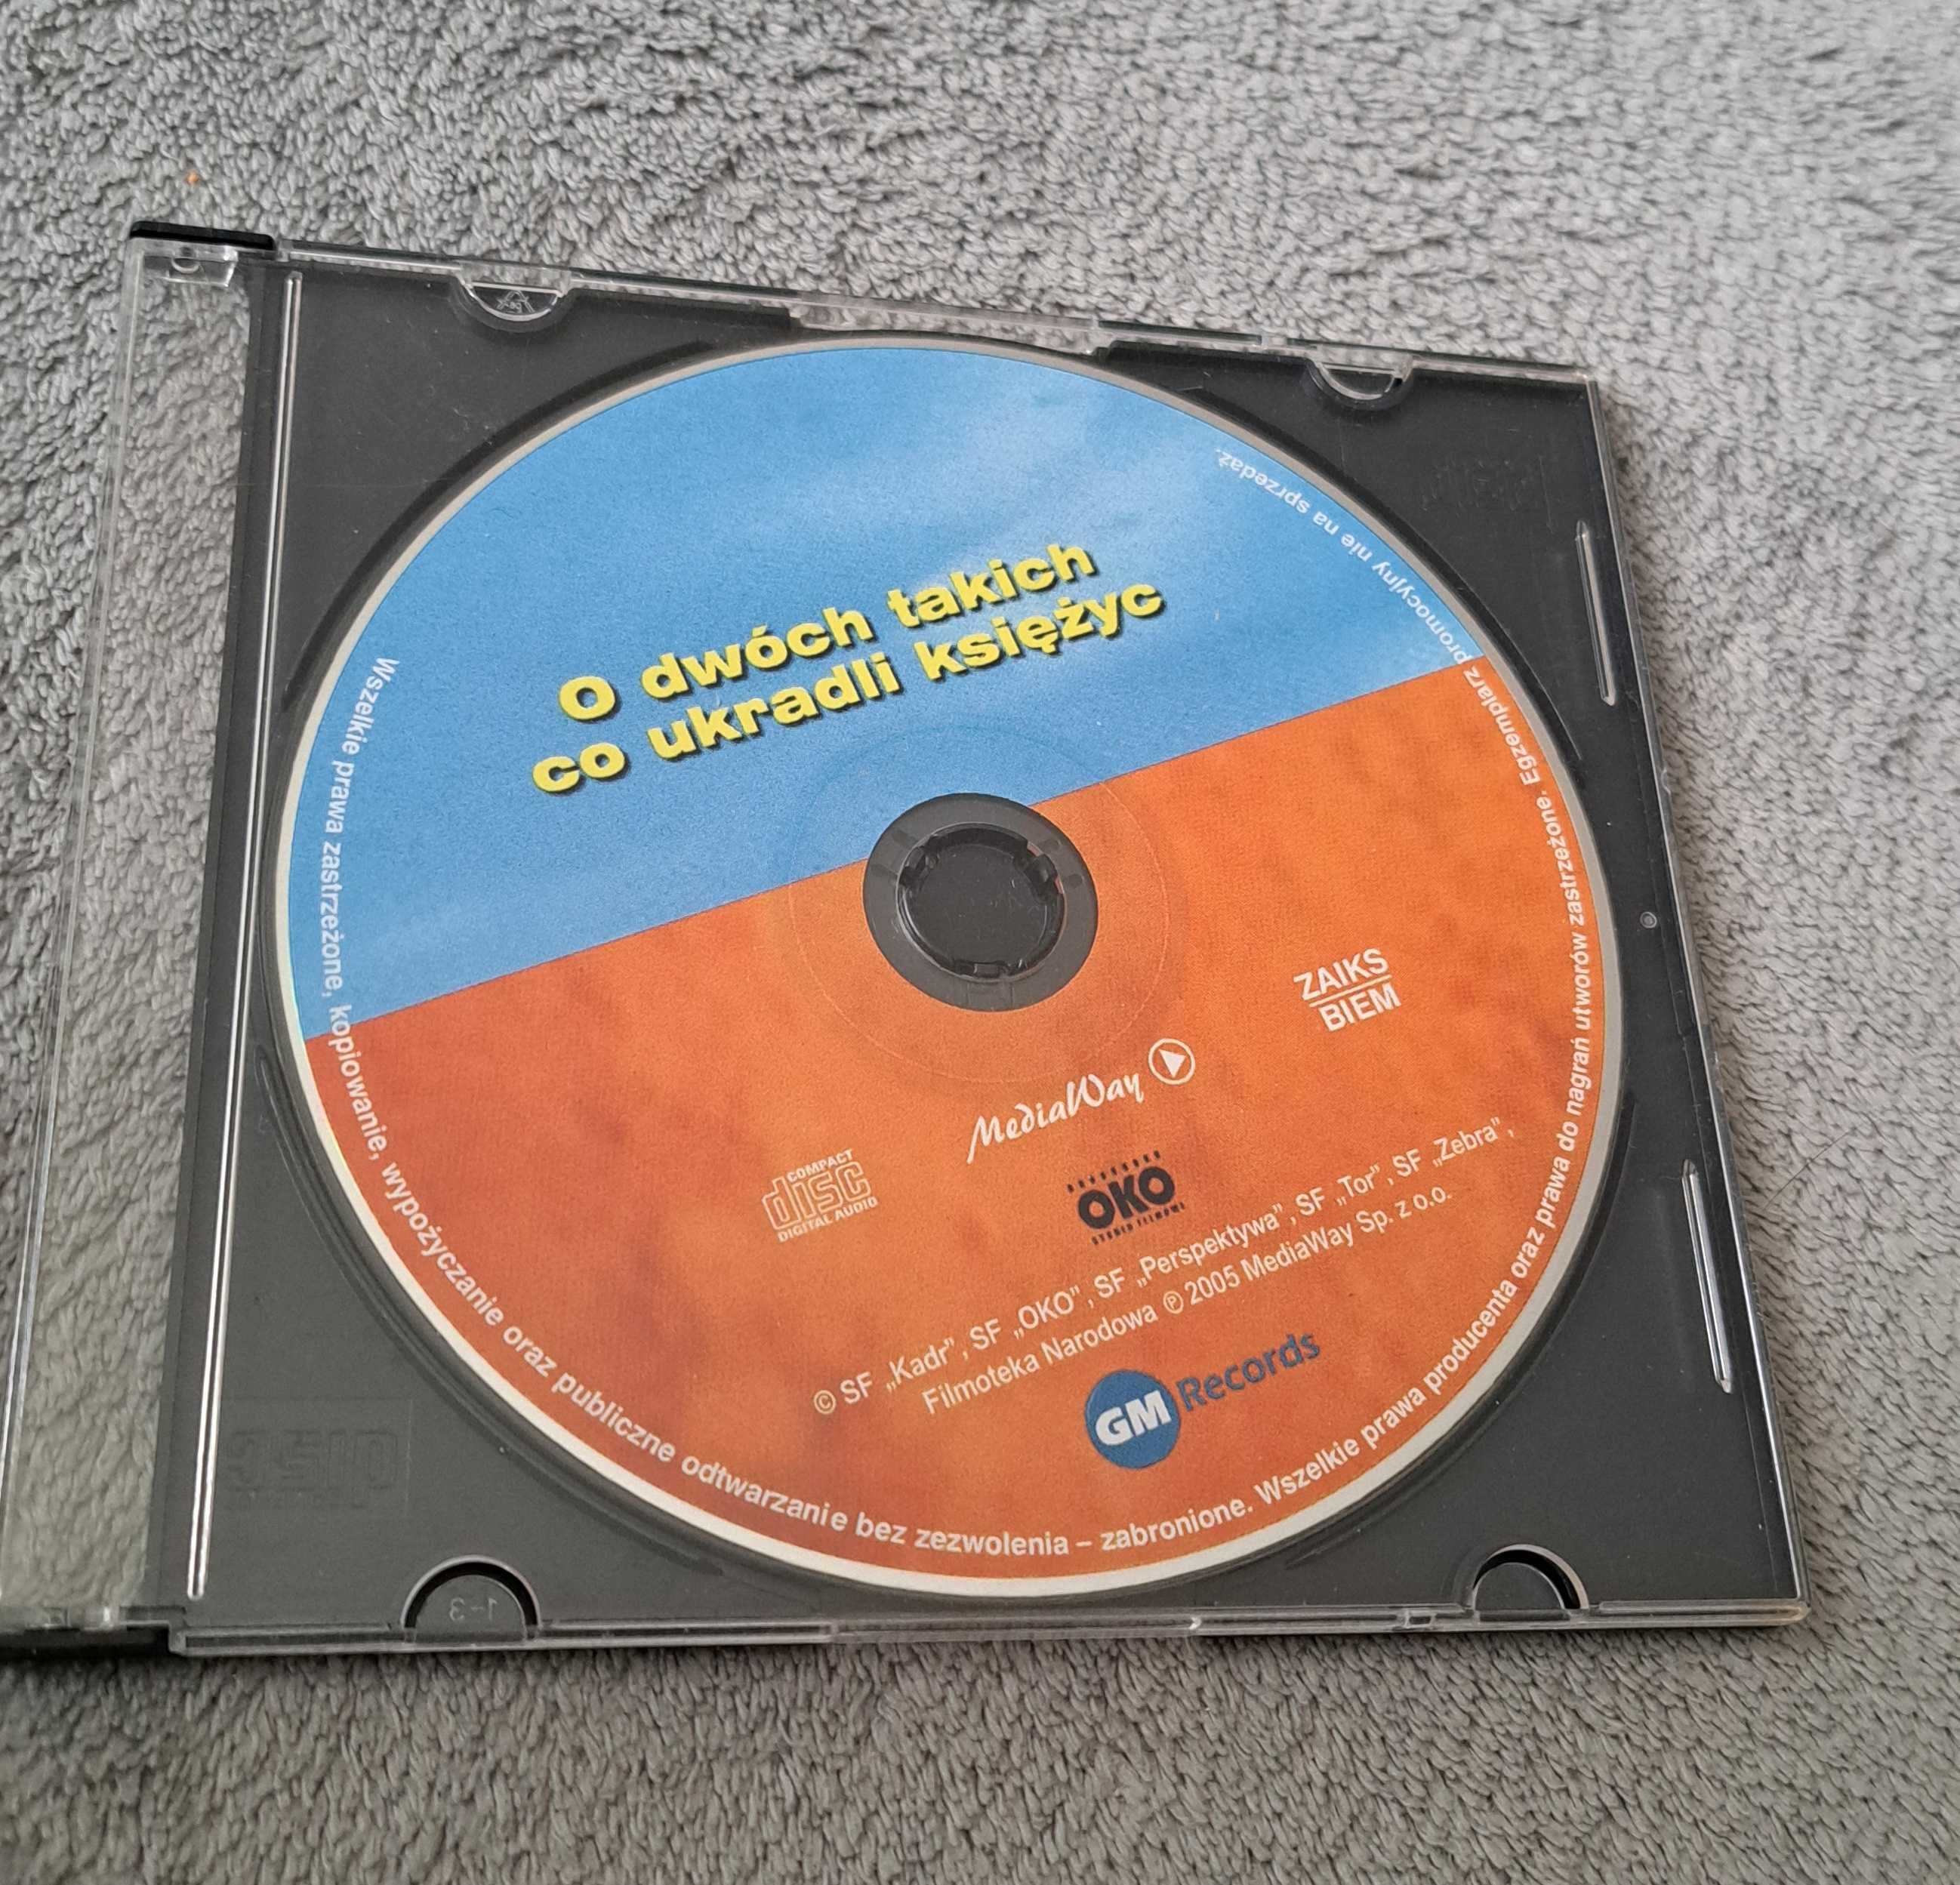 Film cd/dvd o dwóch takich co ukradli ksieżyc  film